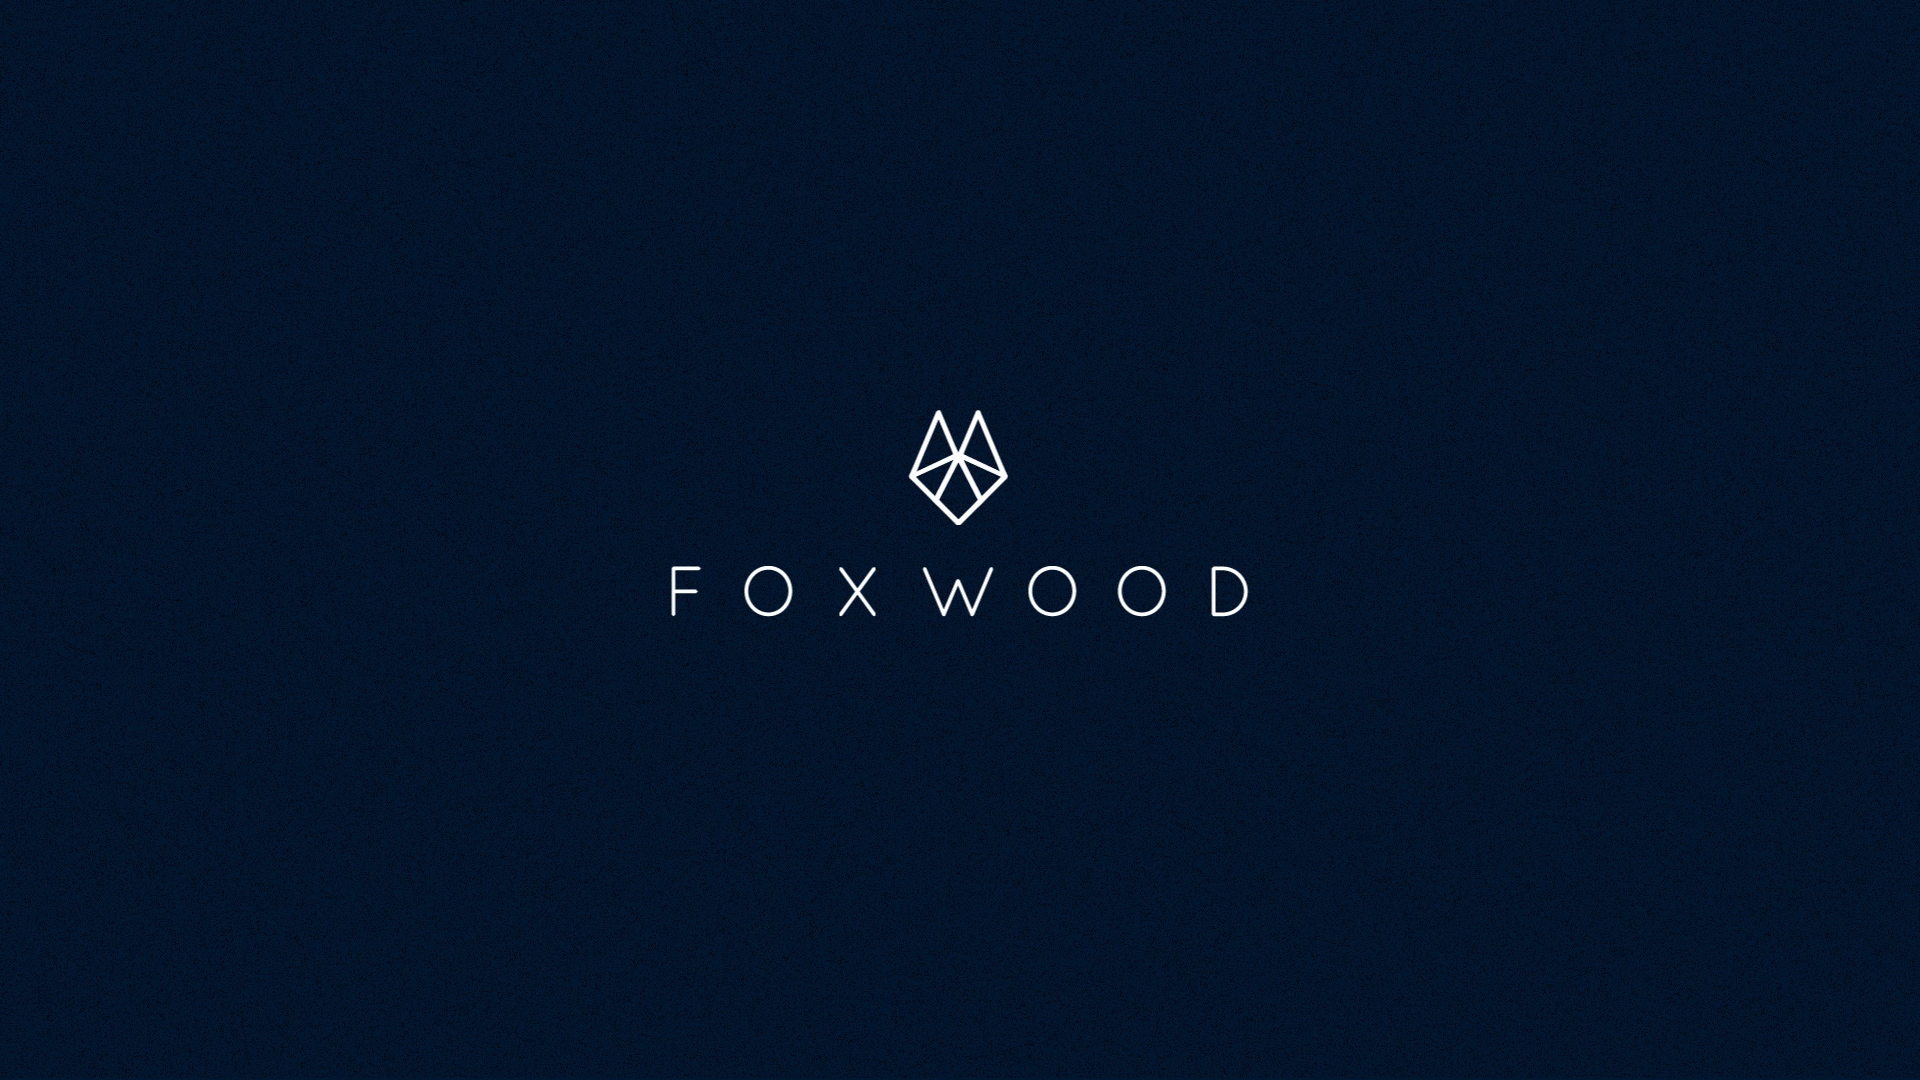 Foxwood Explainer Video